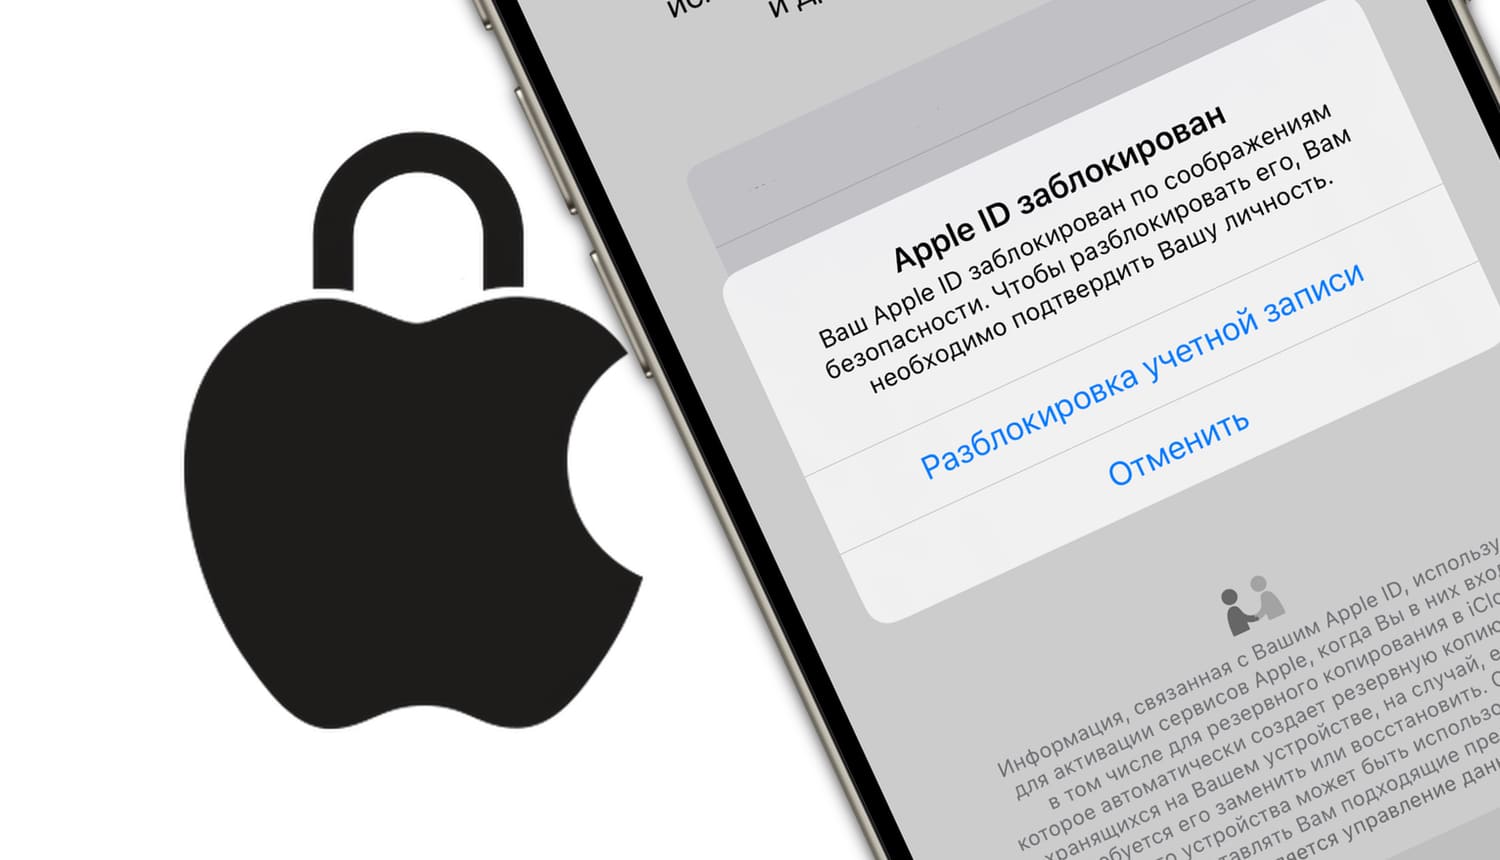 Ваш Apple ID заблокирован по соображениям безопасности: как разблокировать